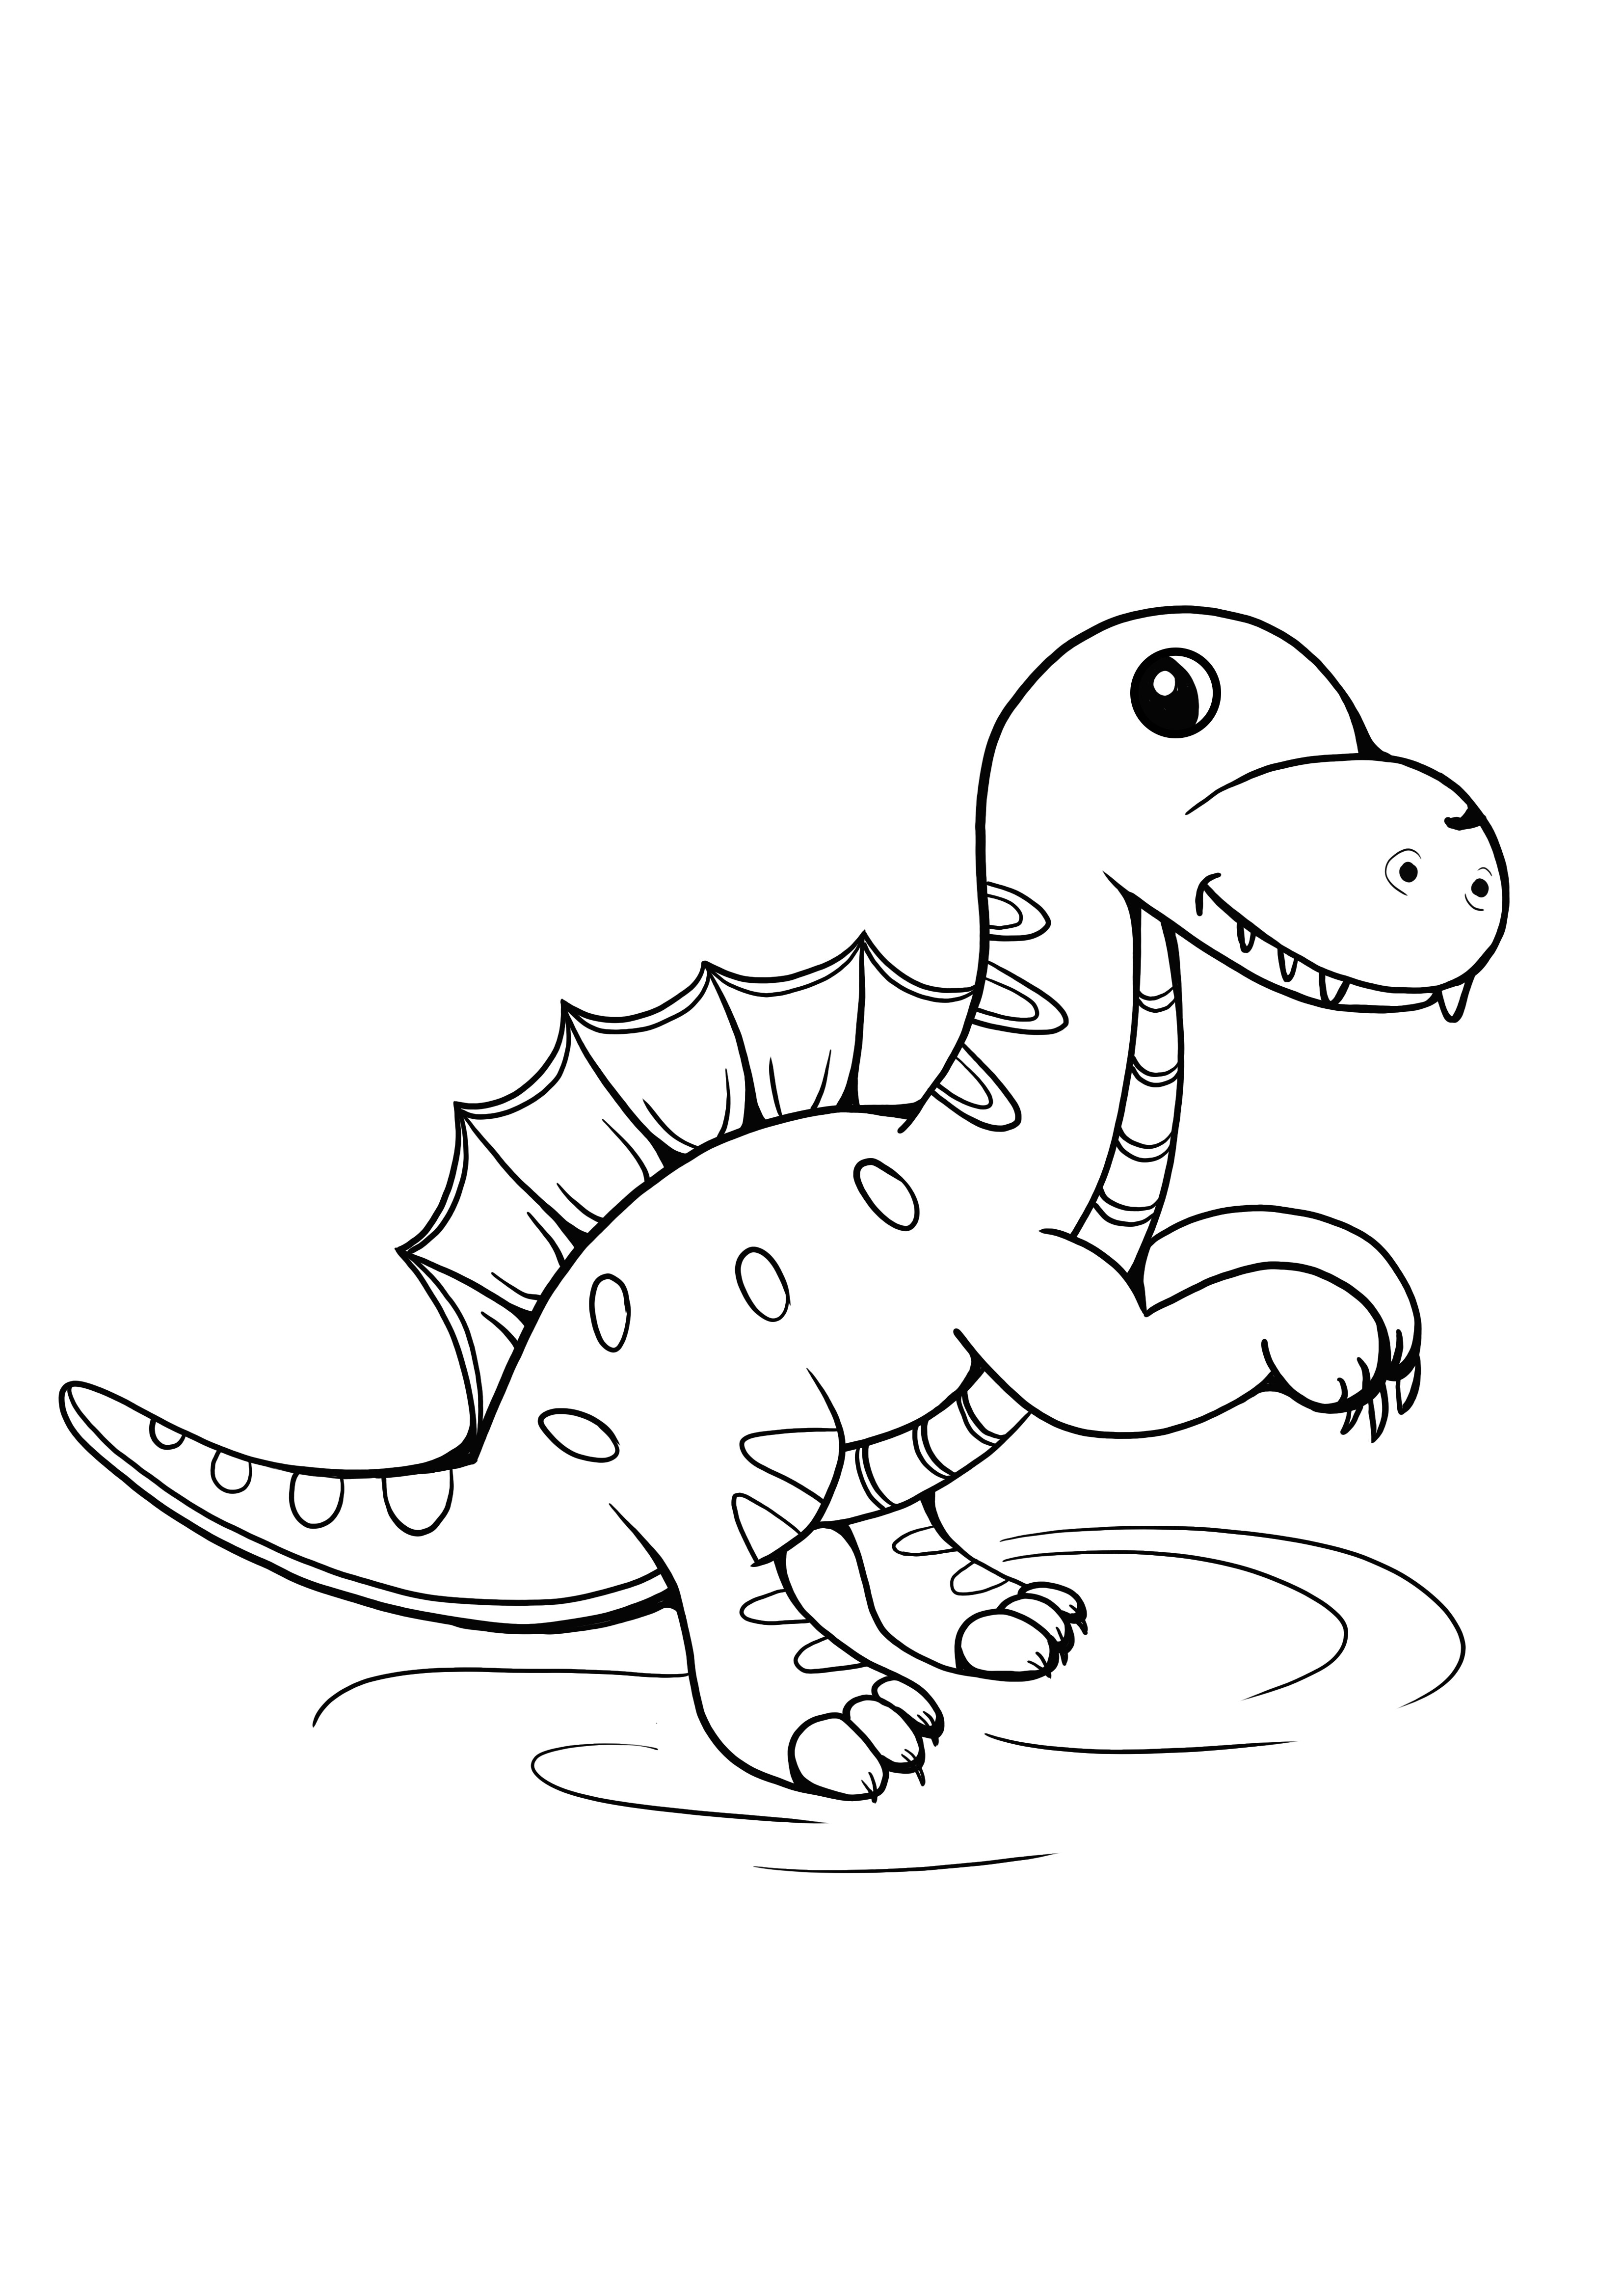 Dinossauro bebê fofo para colorir e imprimir grátis